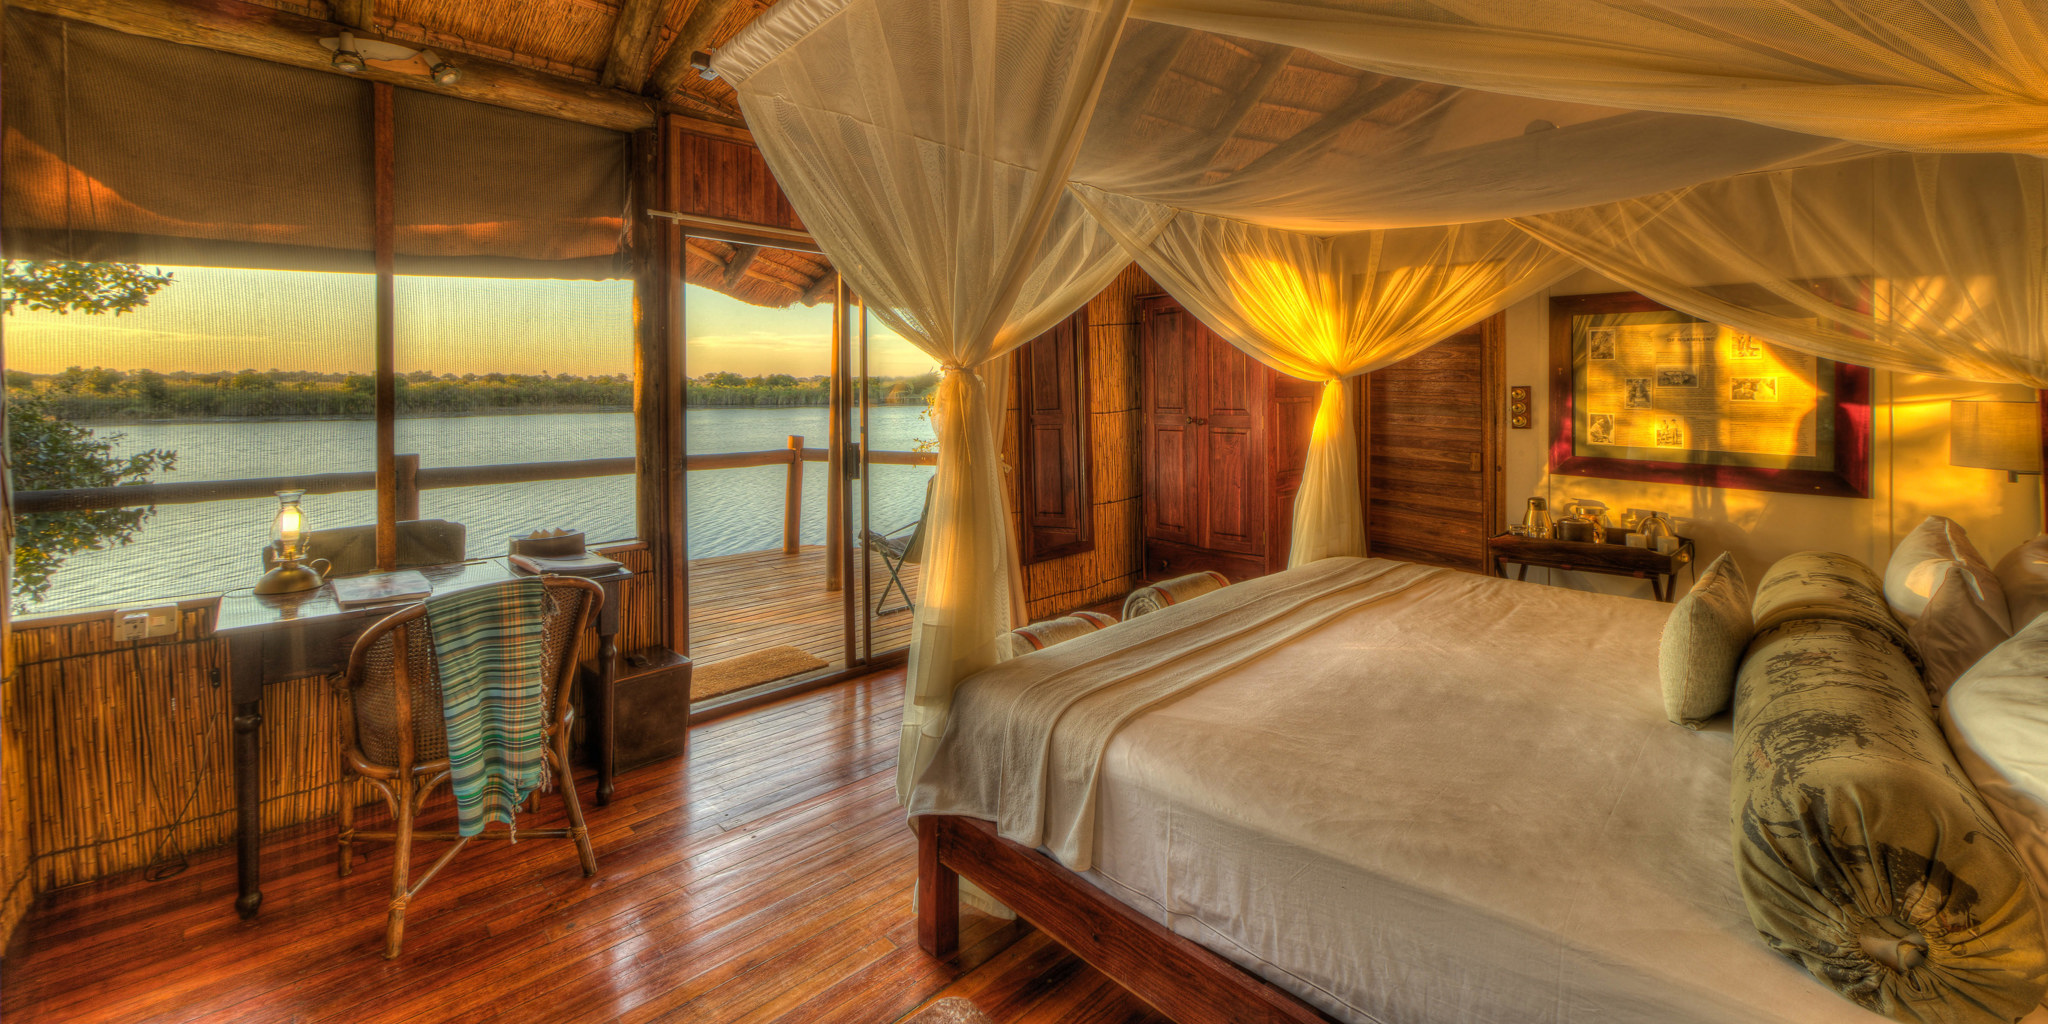 xugana island lodge guest room interior2 botswana